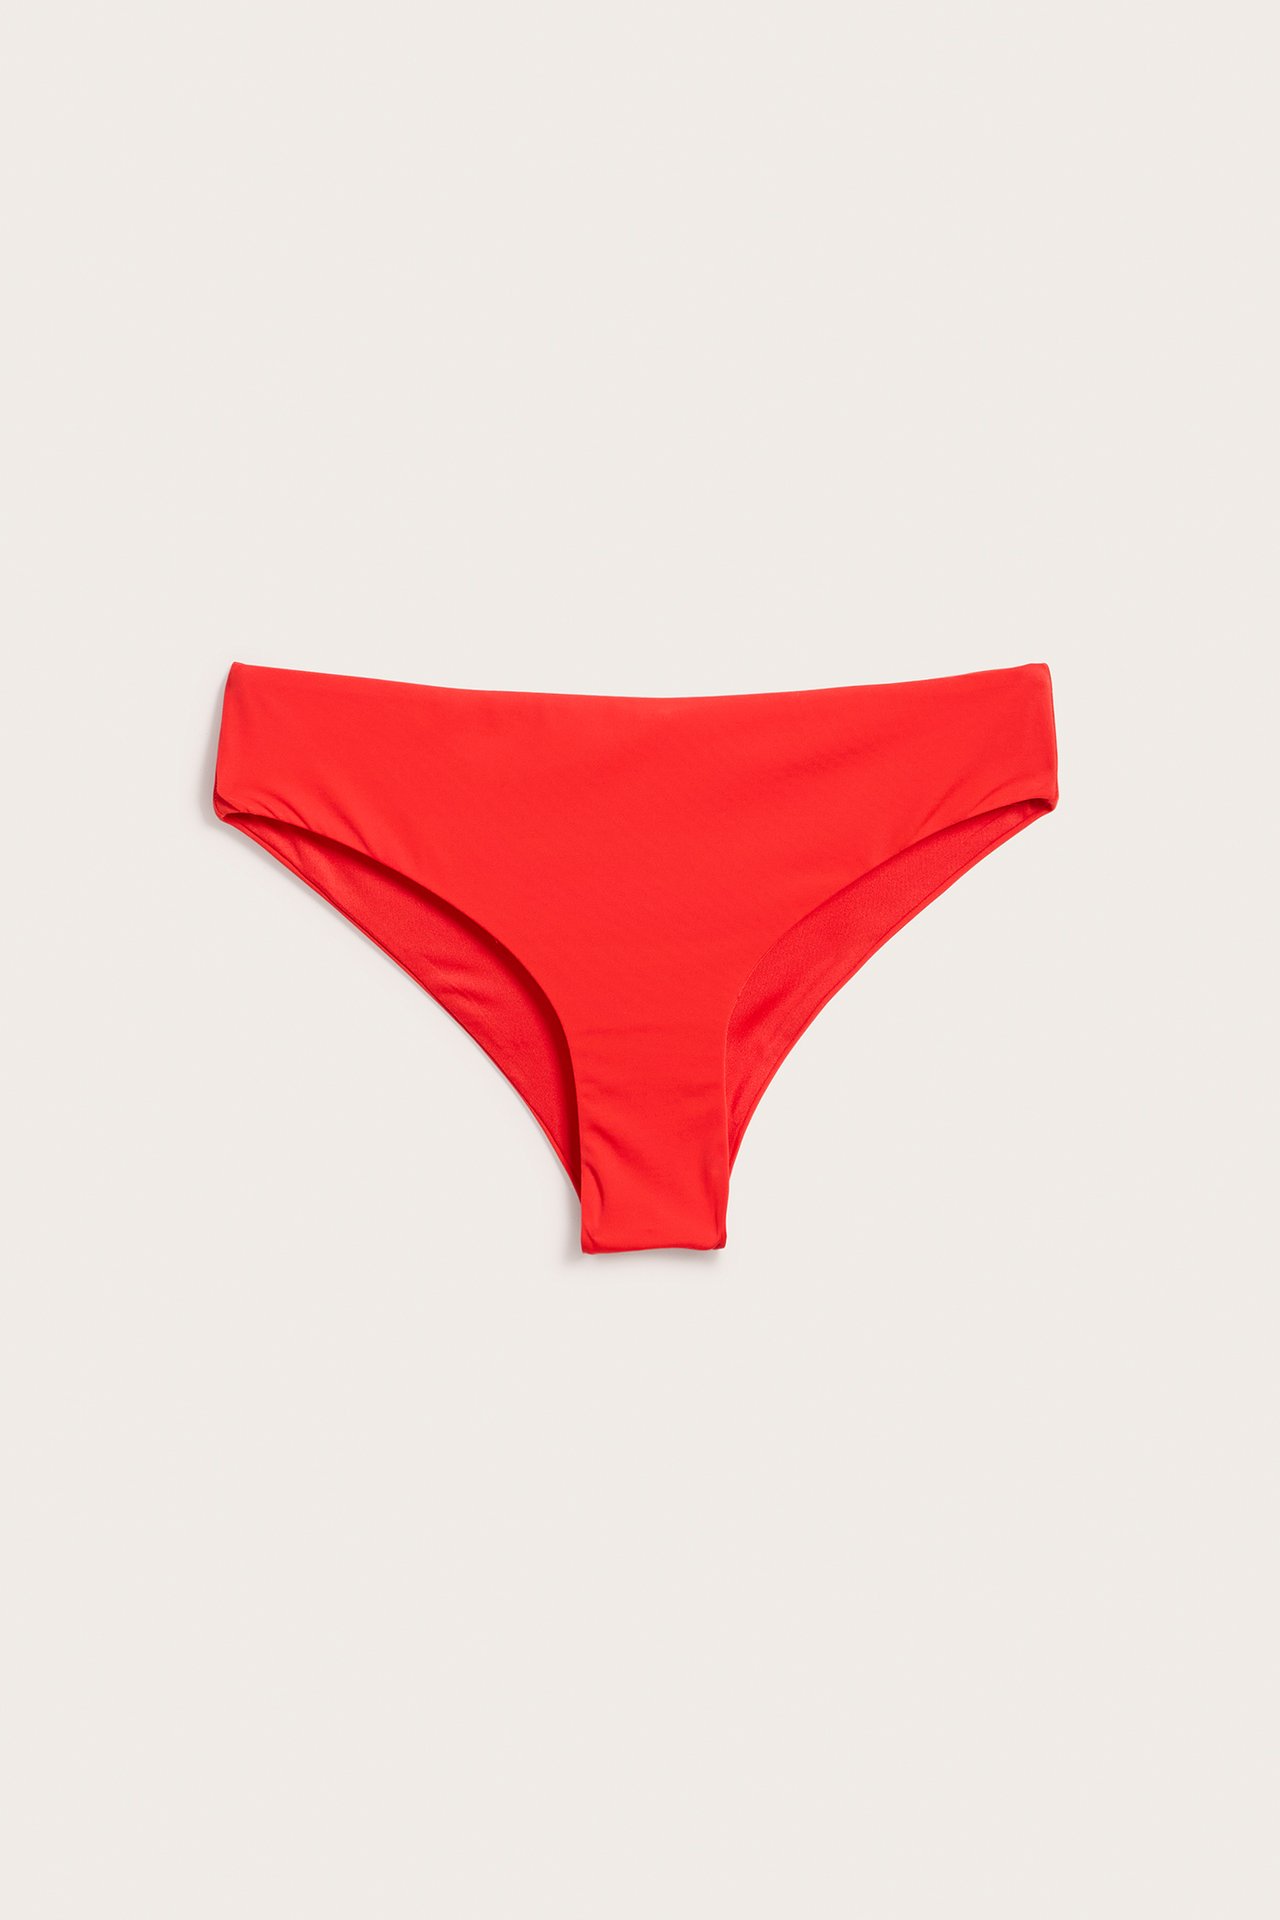 Majtki od bikini, cheeky - Czerwony - 5